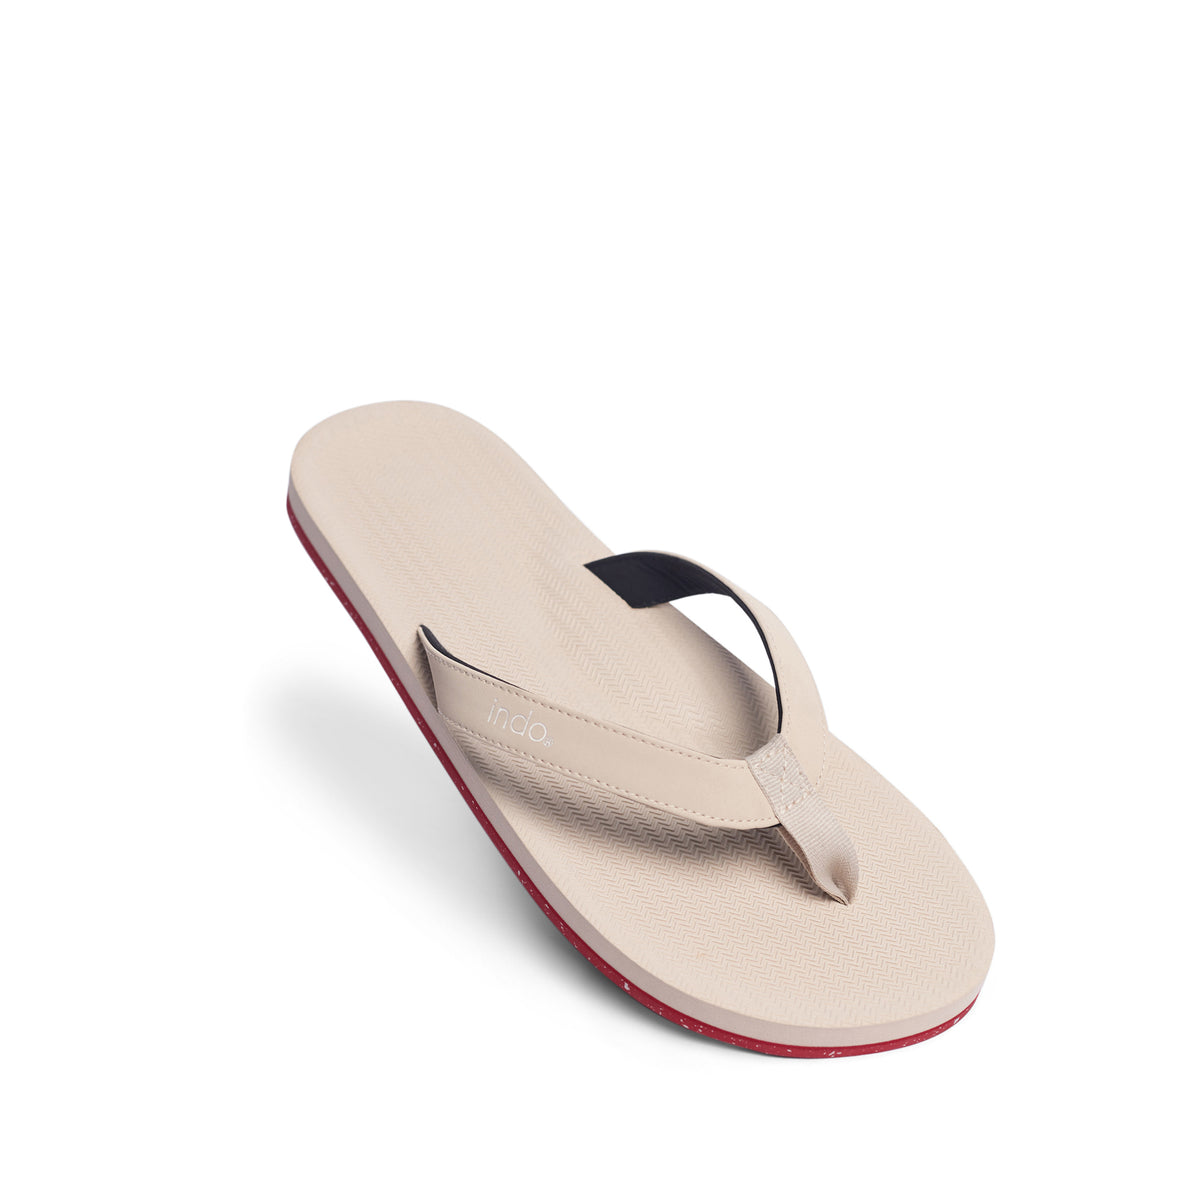 Men’s Flip Flops Sneaker Sole - Red Sole/Sea Salt (7842912633067)